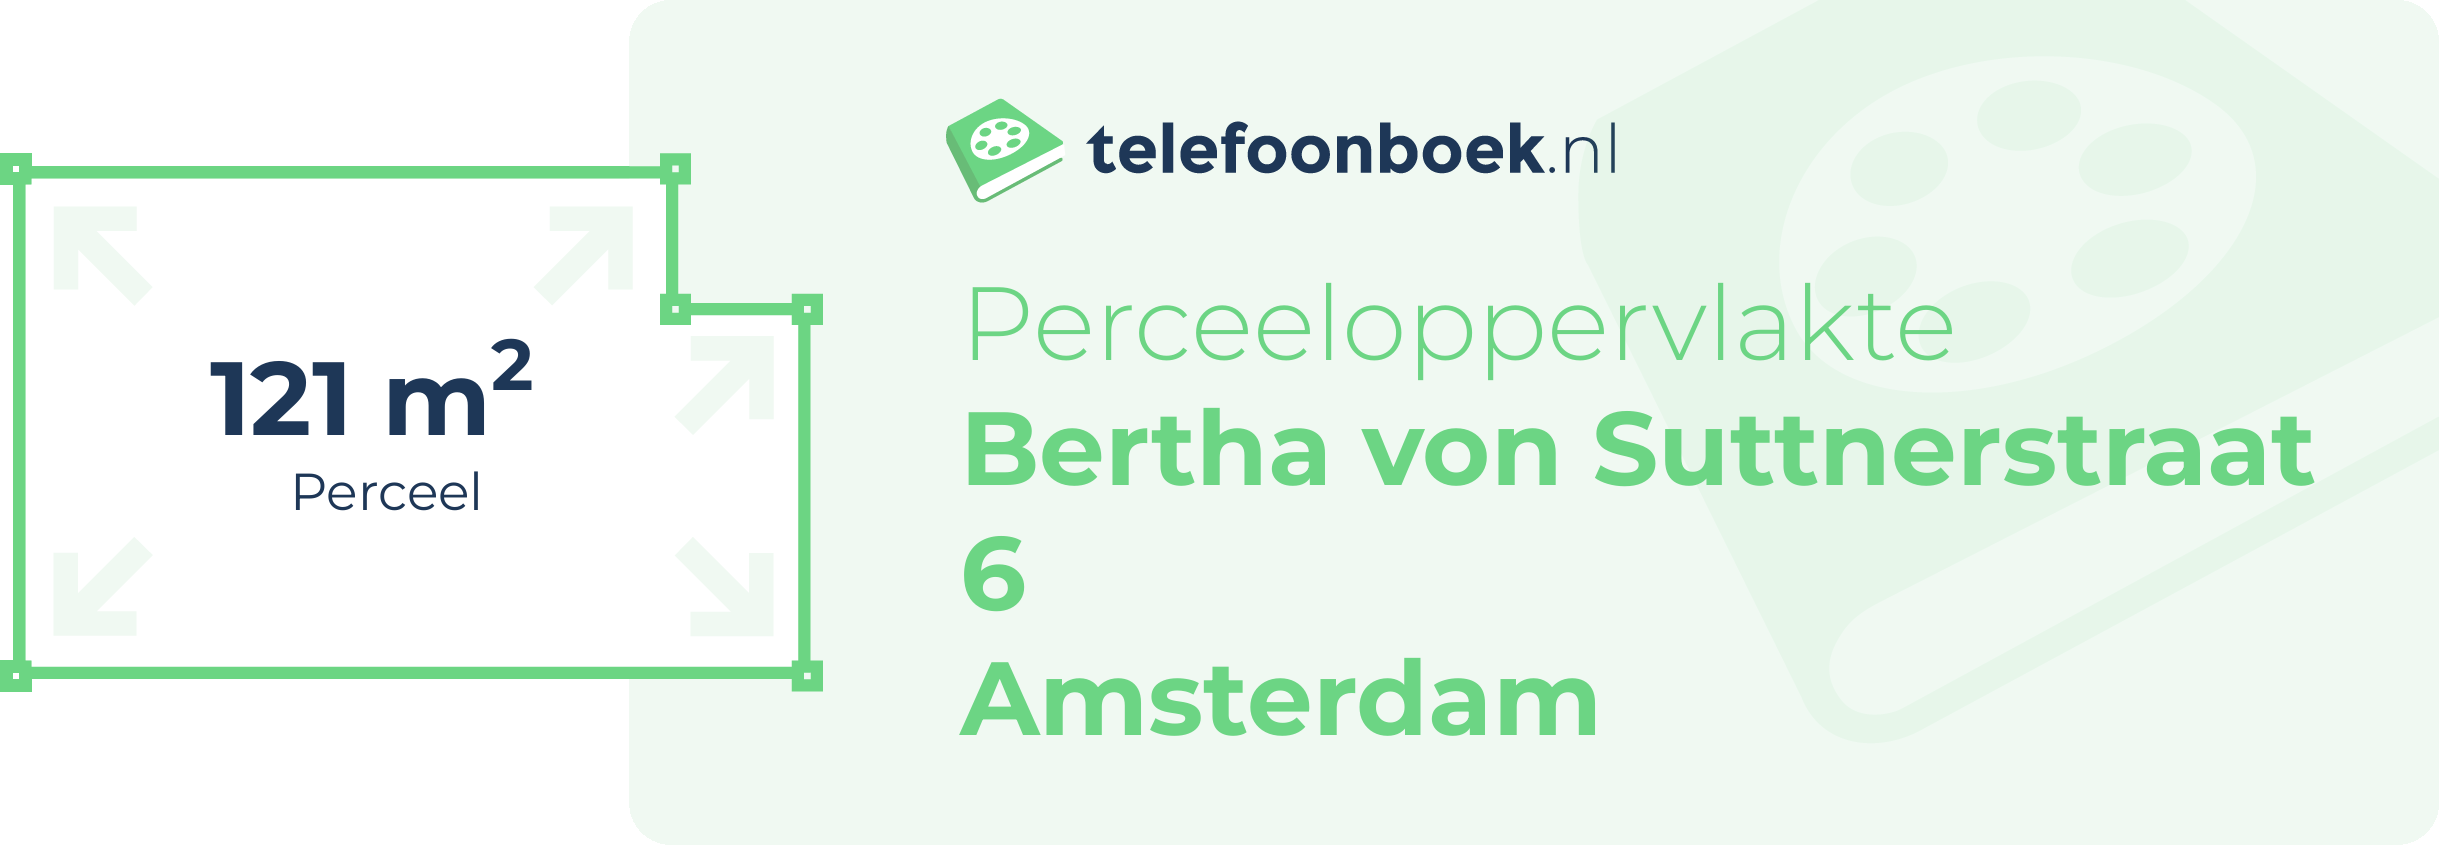 Perceeloppervlakte Bertha Von Suttnerstraat 6 Amsterdam